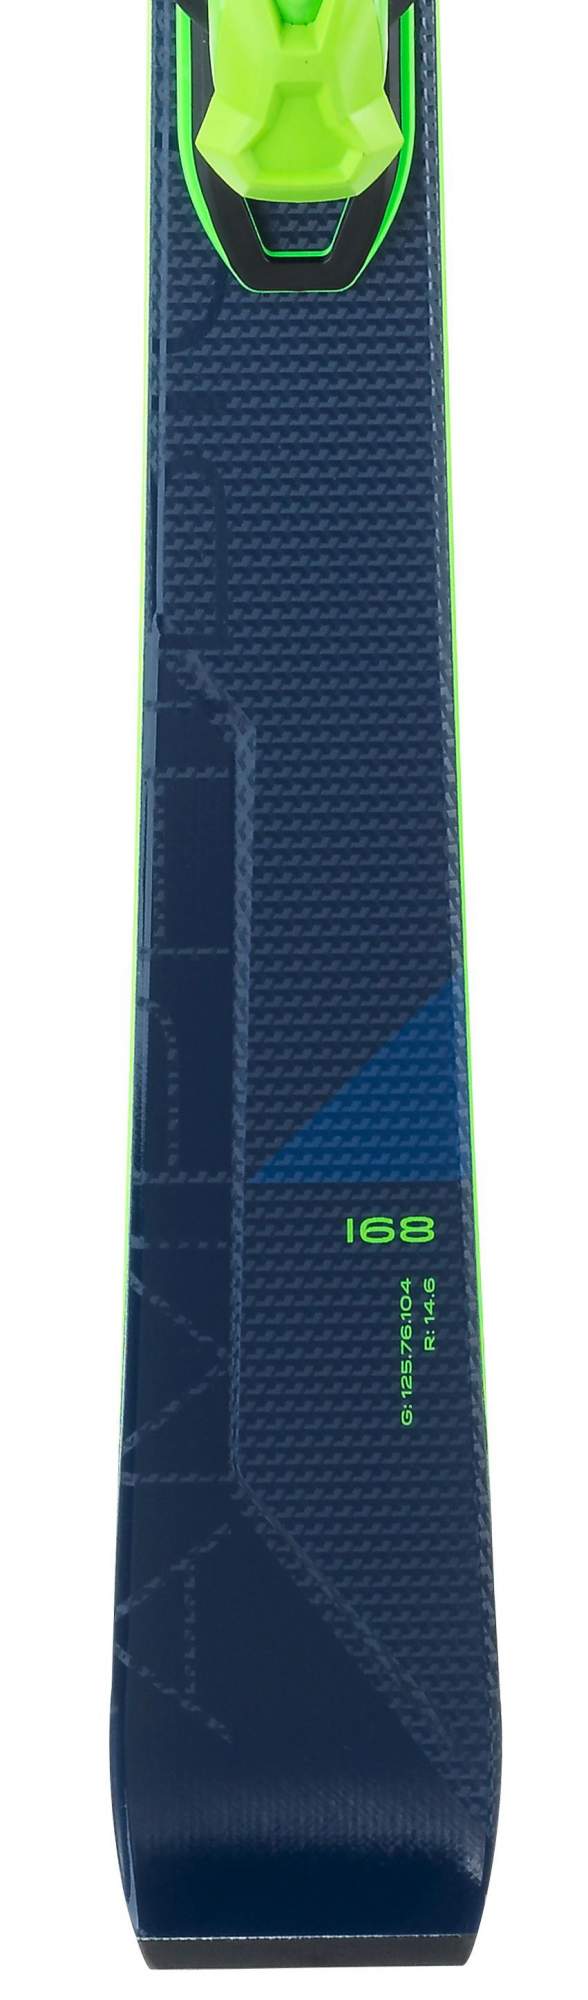 Горные лыжи Elan Amphibio 14Ti Fusionx + Emx 11 Fusionx 2021, blue/green, 168 см